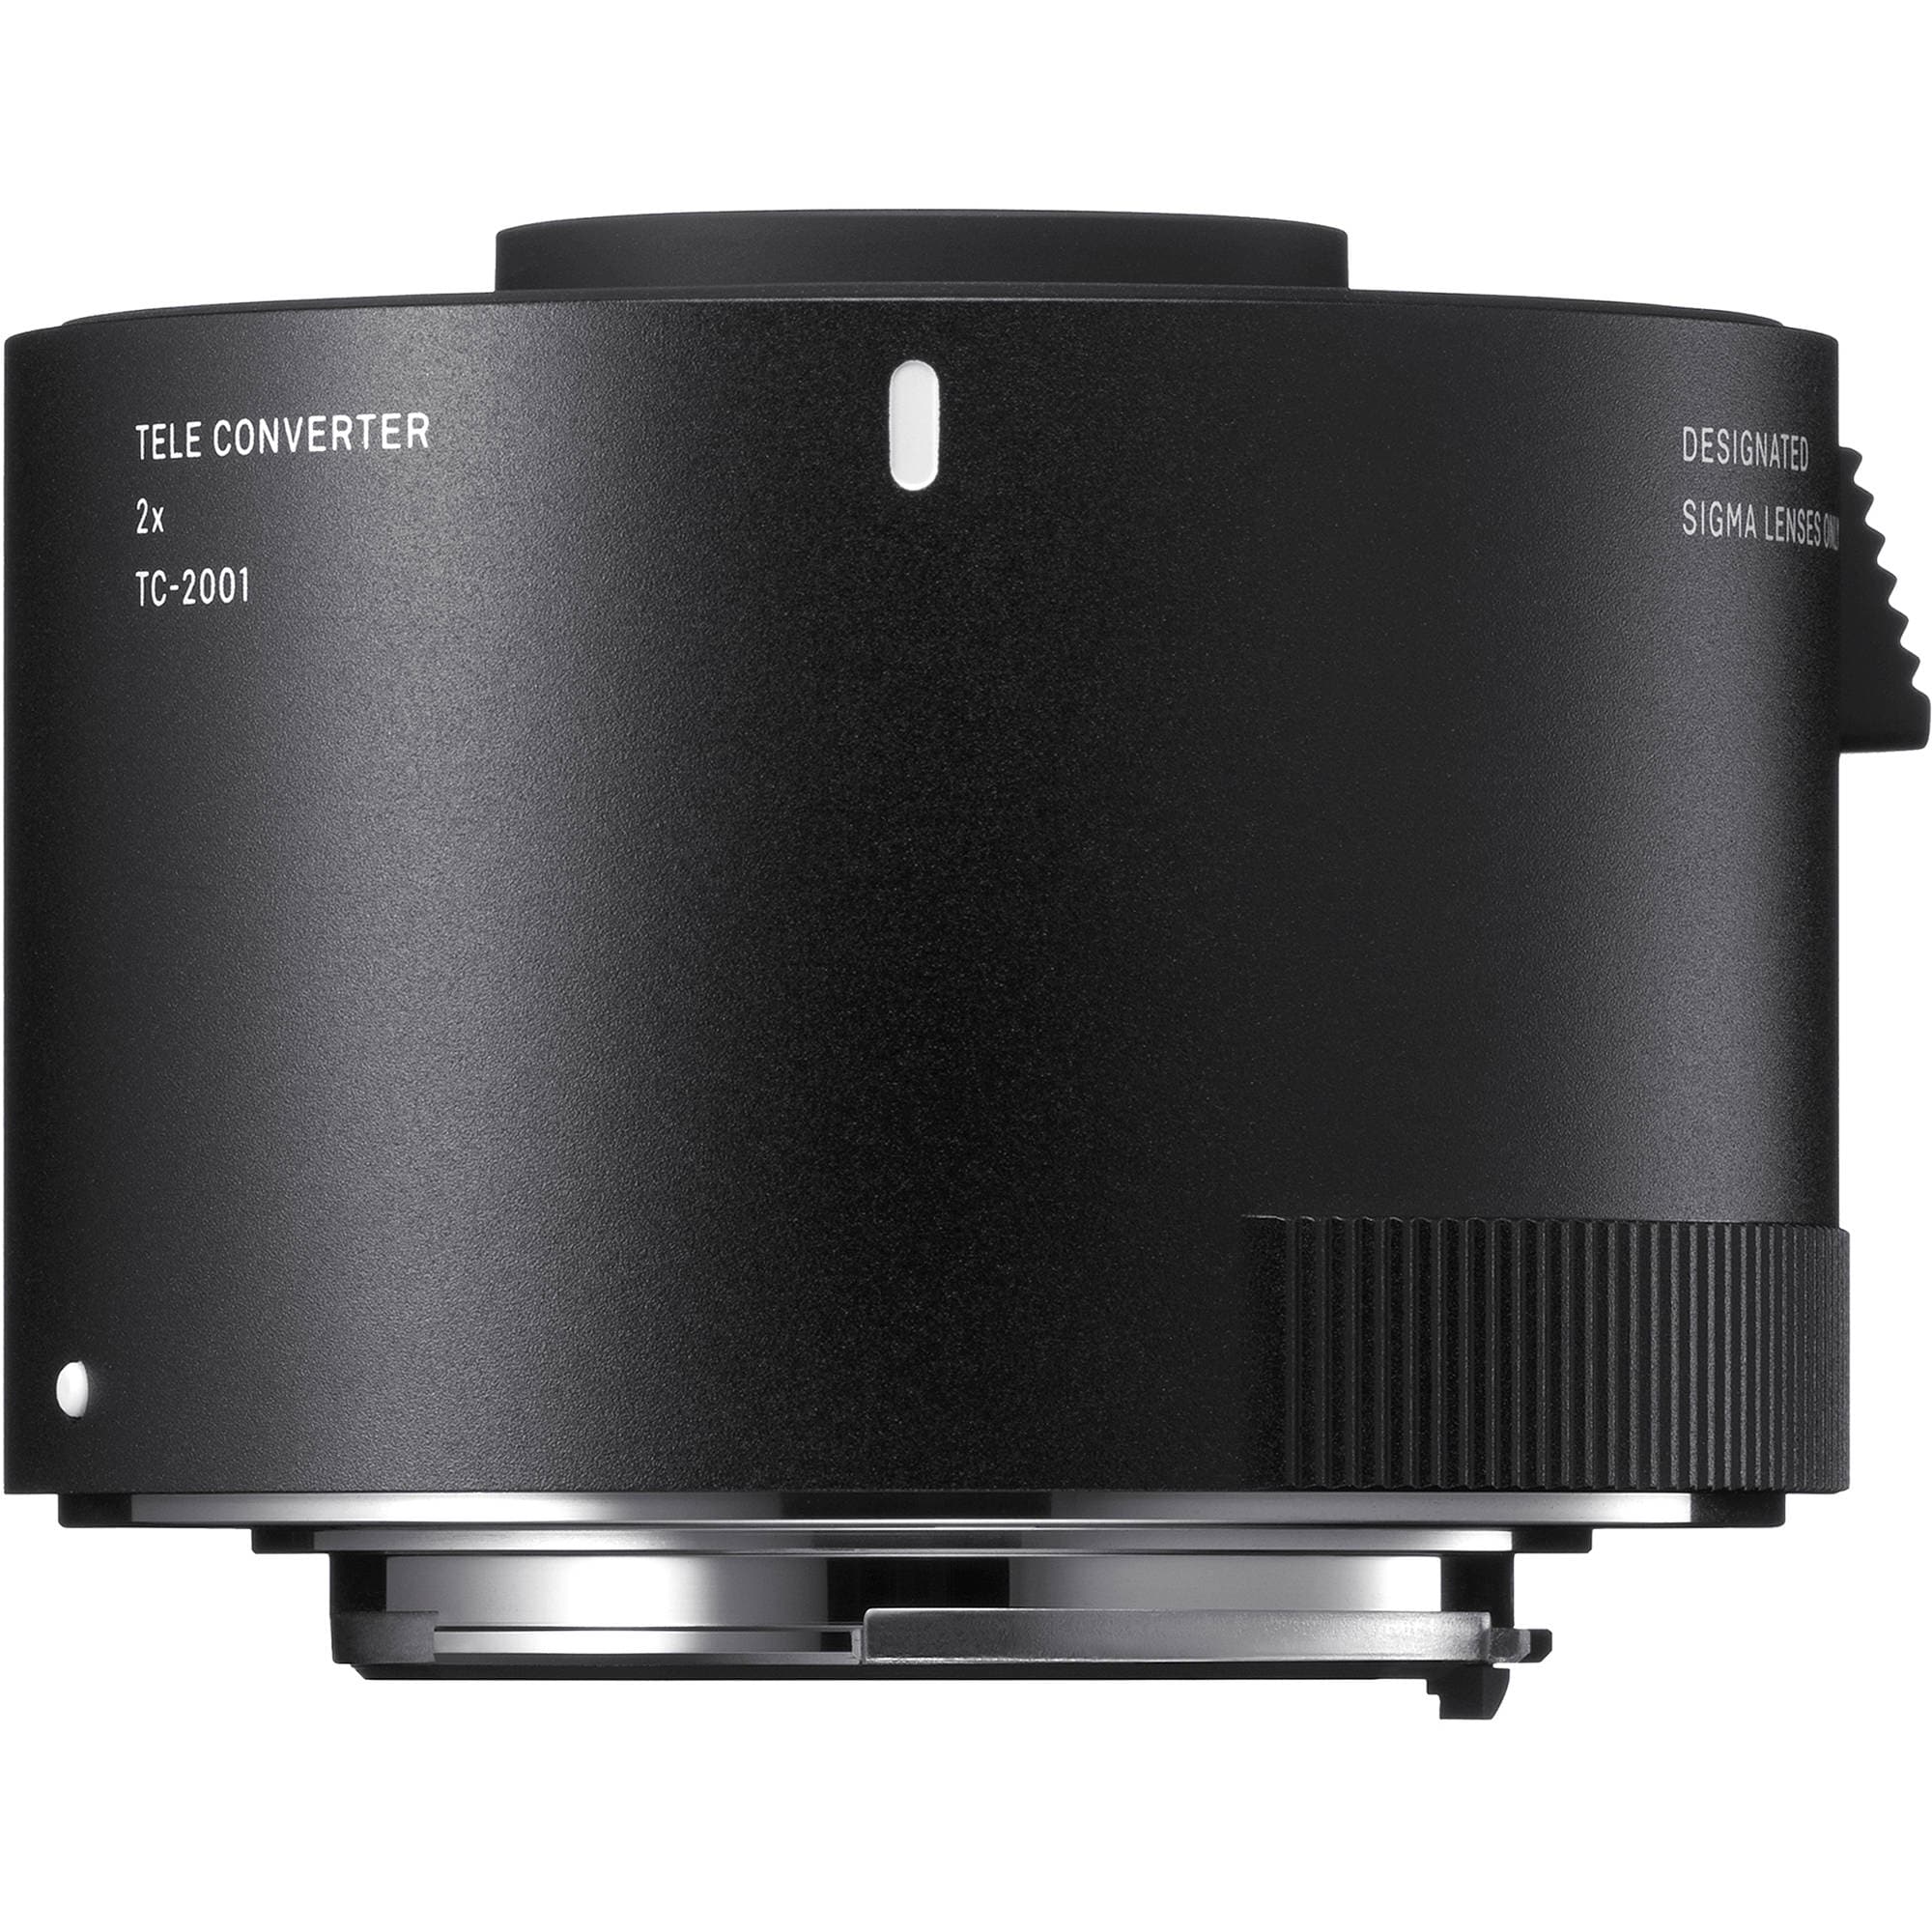 Sigma 2x Teleconverter for Nikon